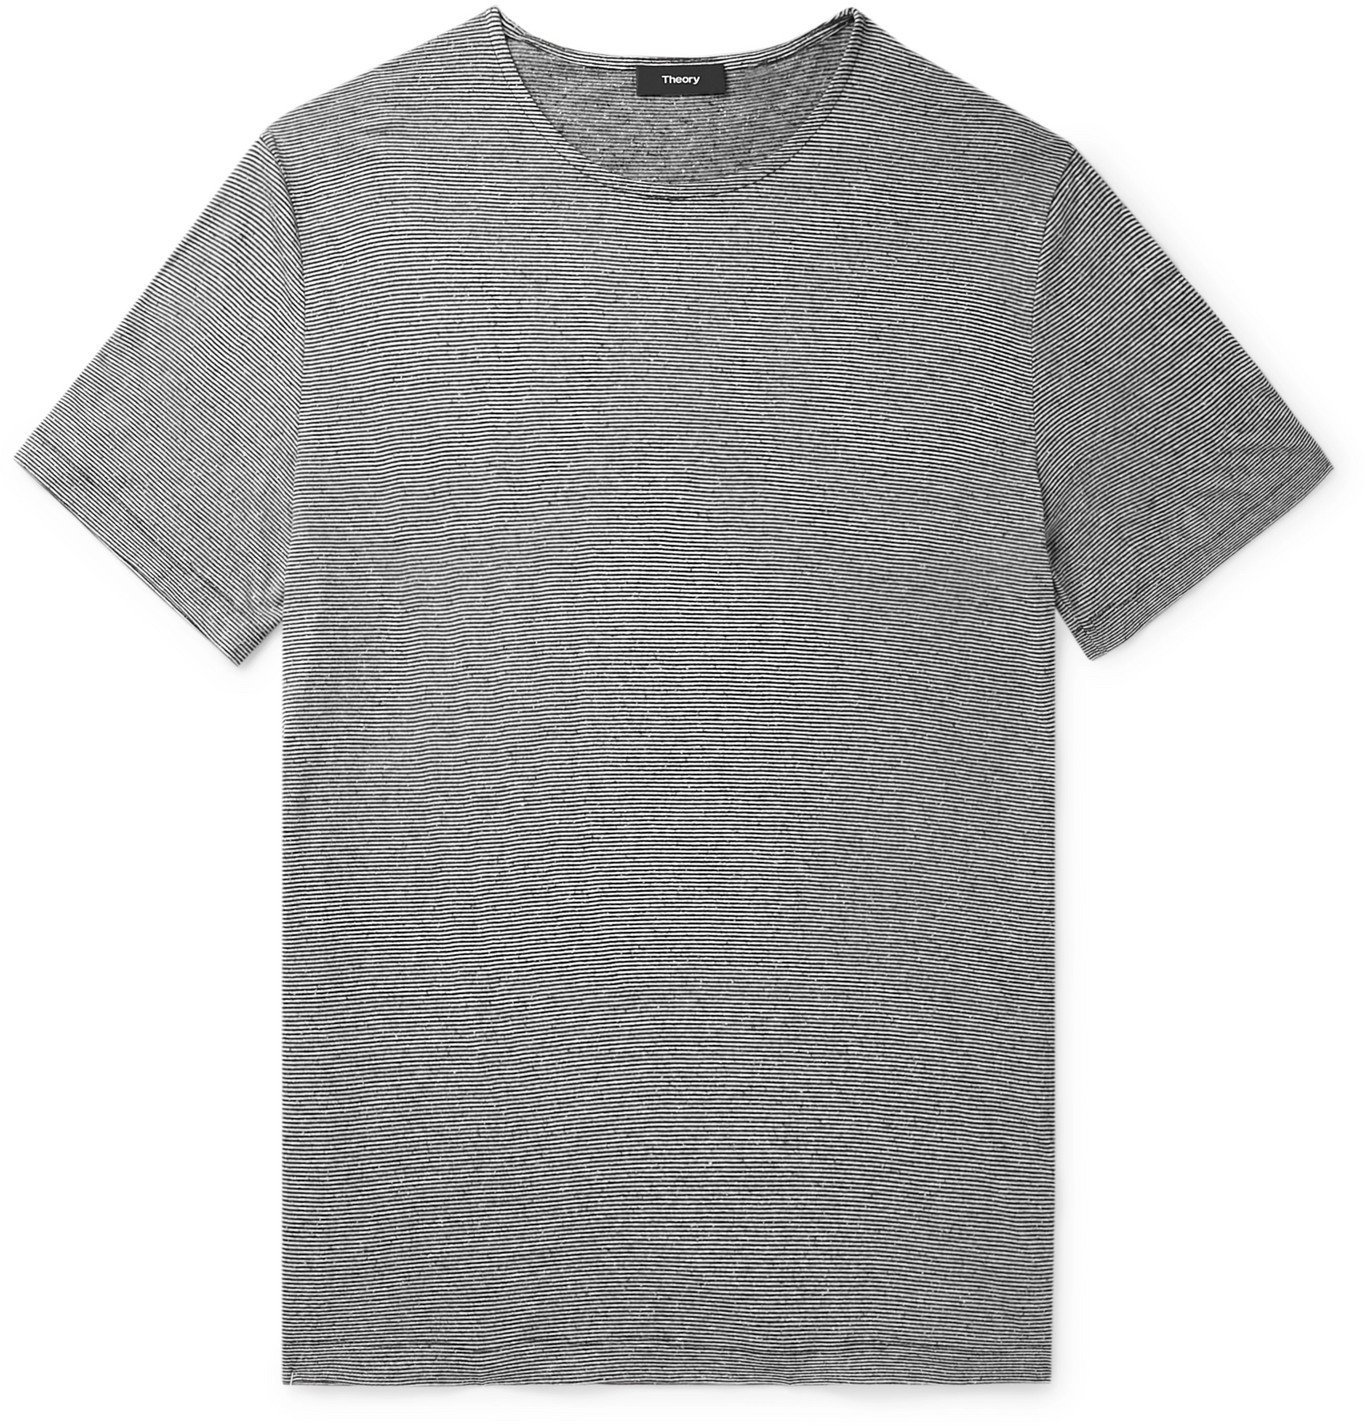 Theory - Tidal Striped Slub Knitted T-Shirt - Black Theory